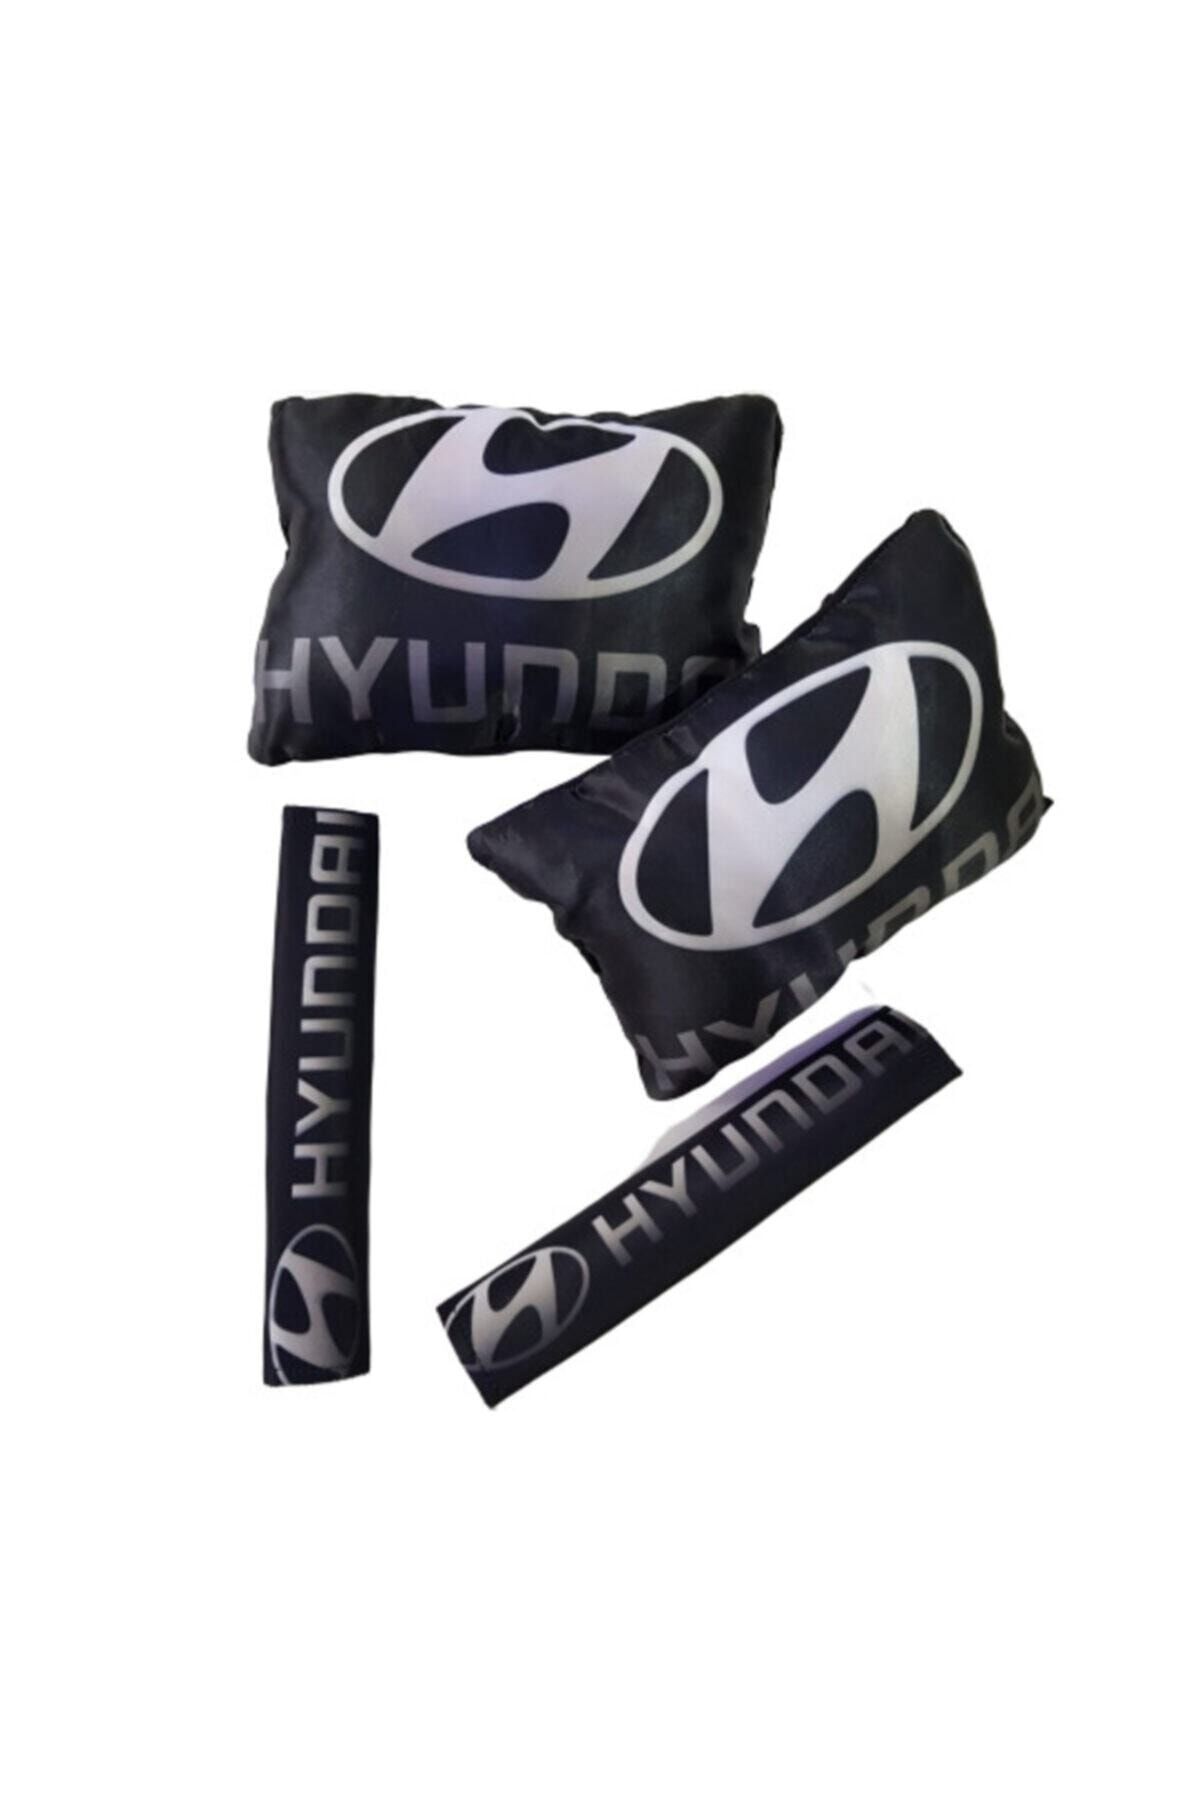 Hyundai Siyah Boyun Yastığı Kemer Seti